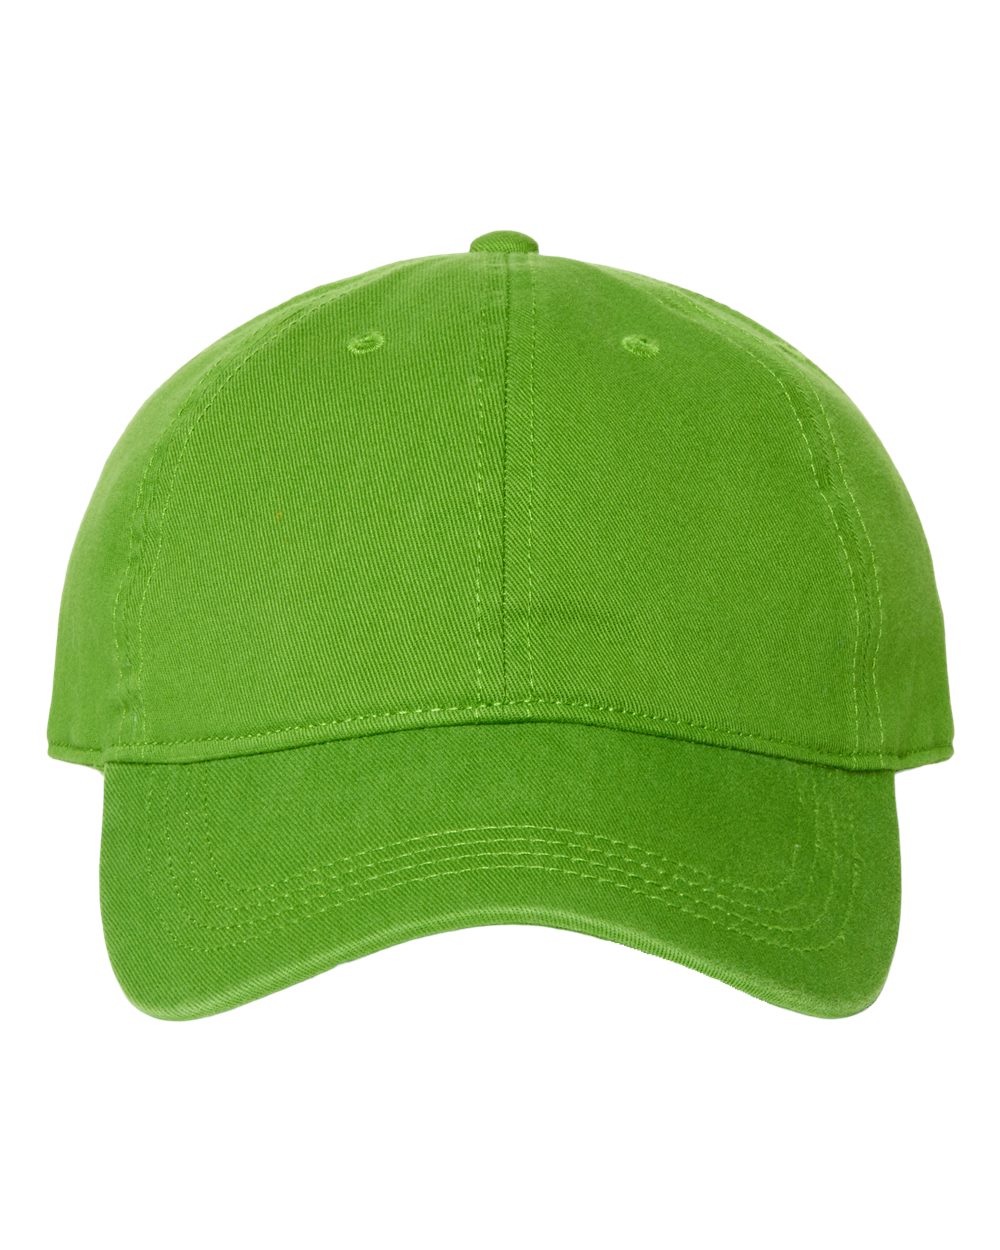 click to view Irish Green